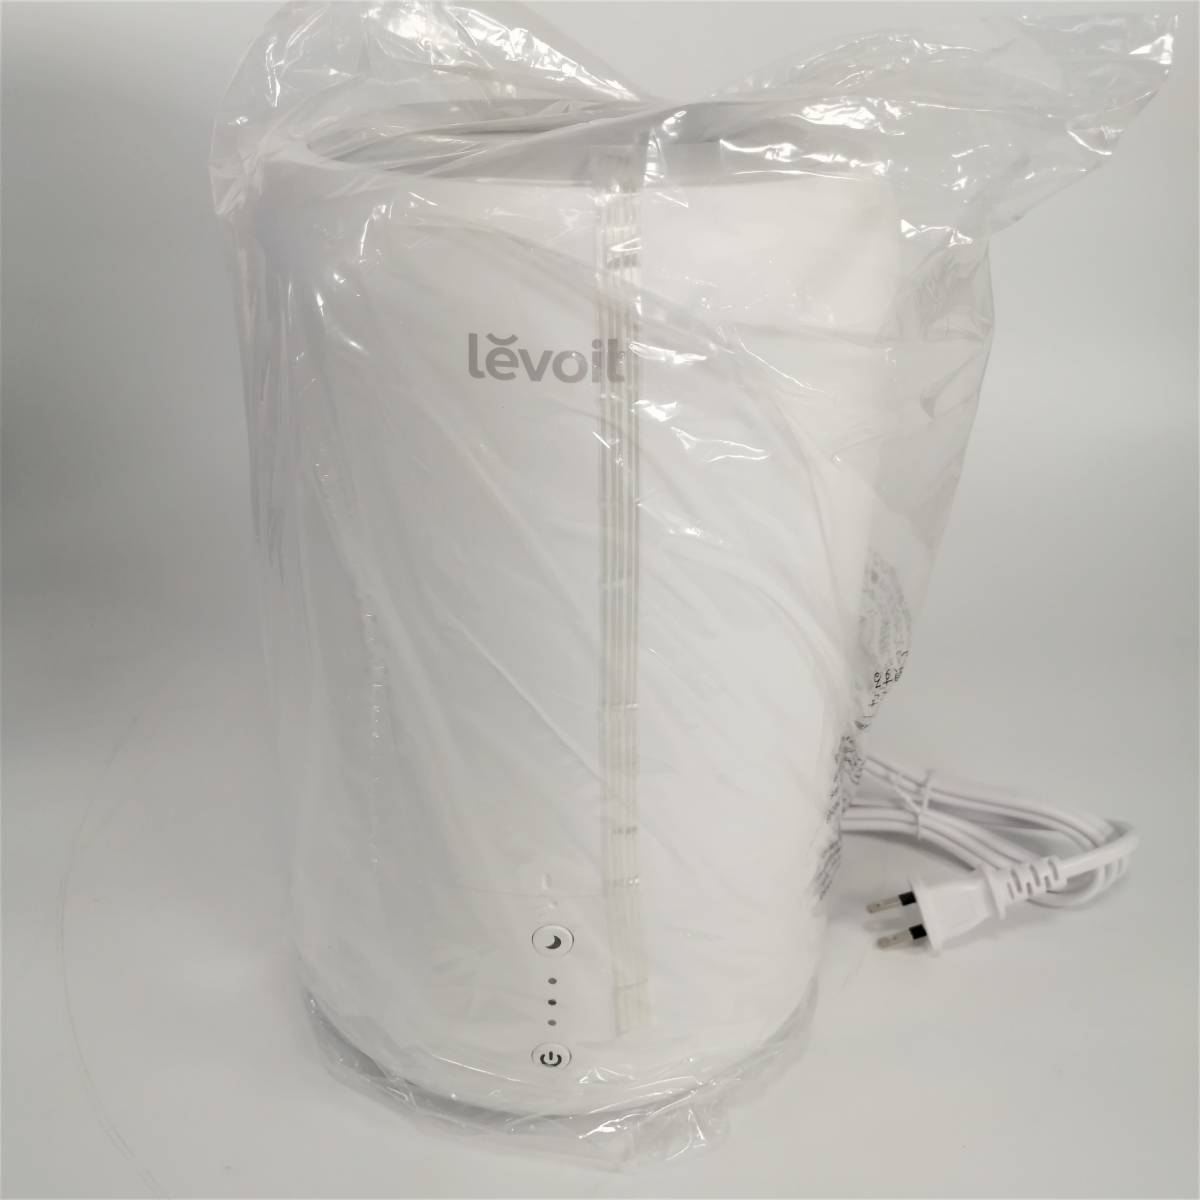 [ не использовался ] Levoit увлажнитель Dual 100 белый Revo ito настольный большая вместимость 1.8L автоматически влажность регулировка compact aroma [ outlet ] 22 00087